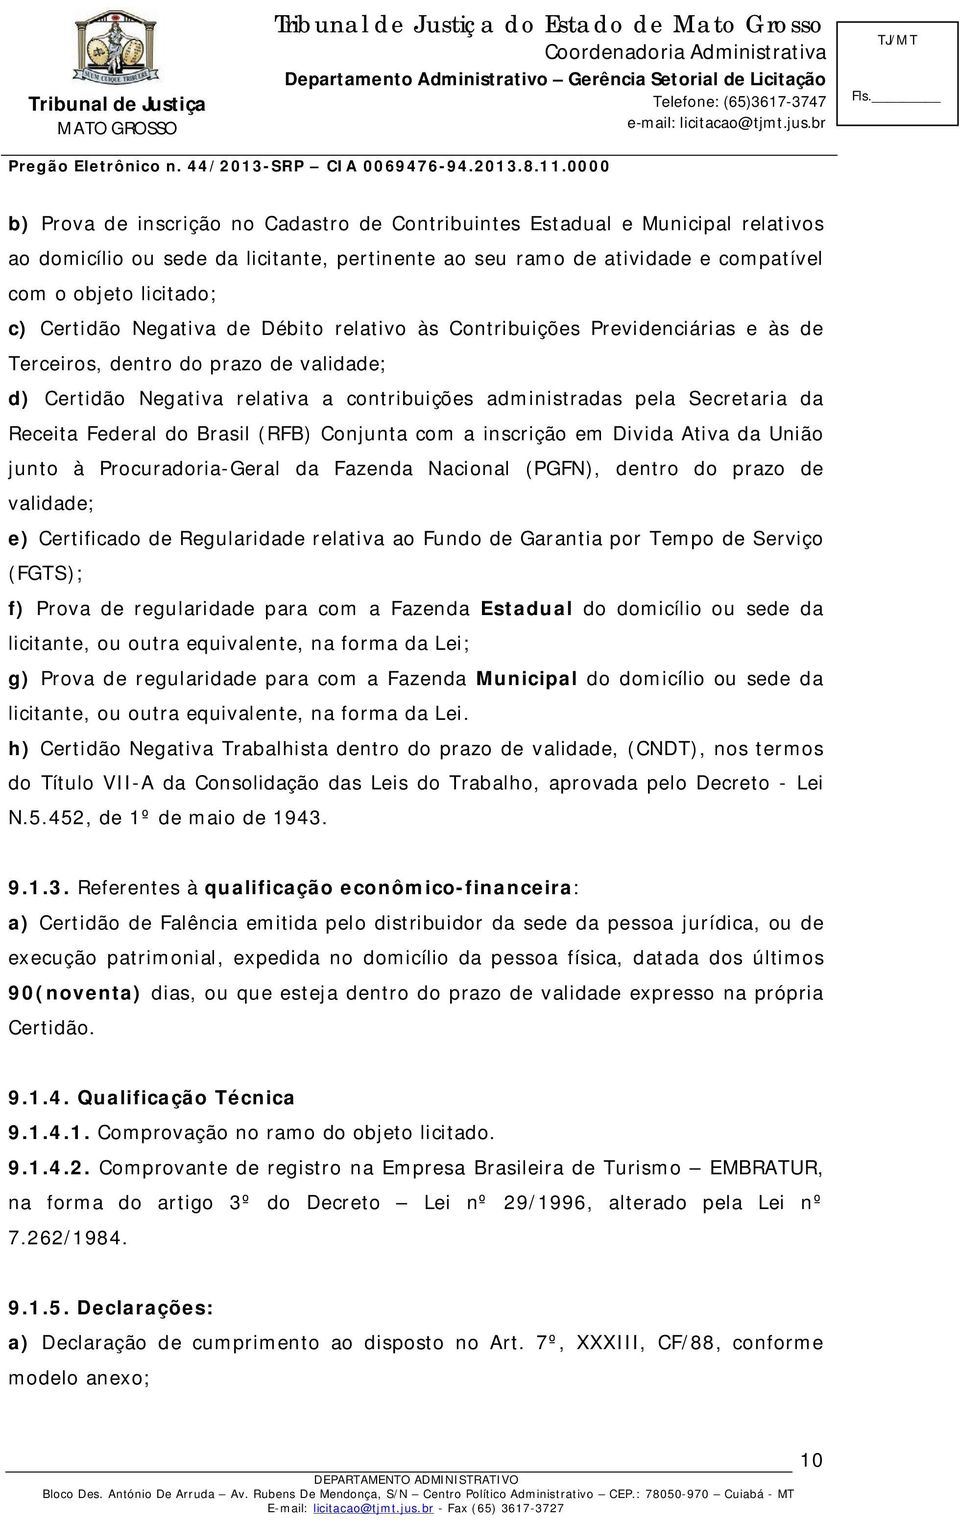 Receita Federal do Brasil (RFB) Conjunta com a inscrição em Divida Ativa da União junto à Procuradoria-Geral da Fazenda Nacional (PGFN), dentro do prazo de validade; e) Certificado de Regularidade